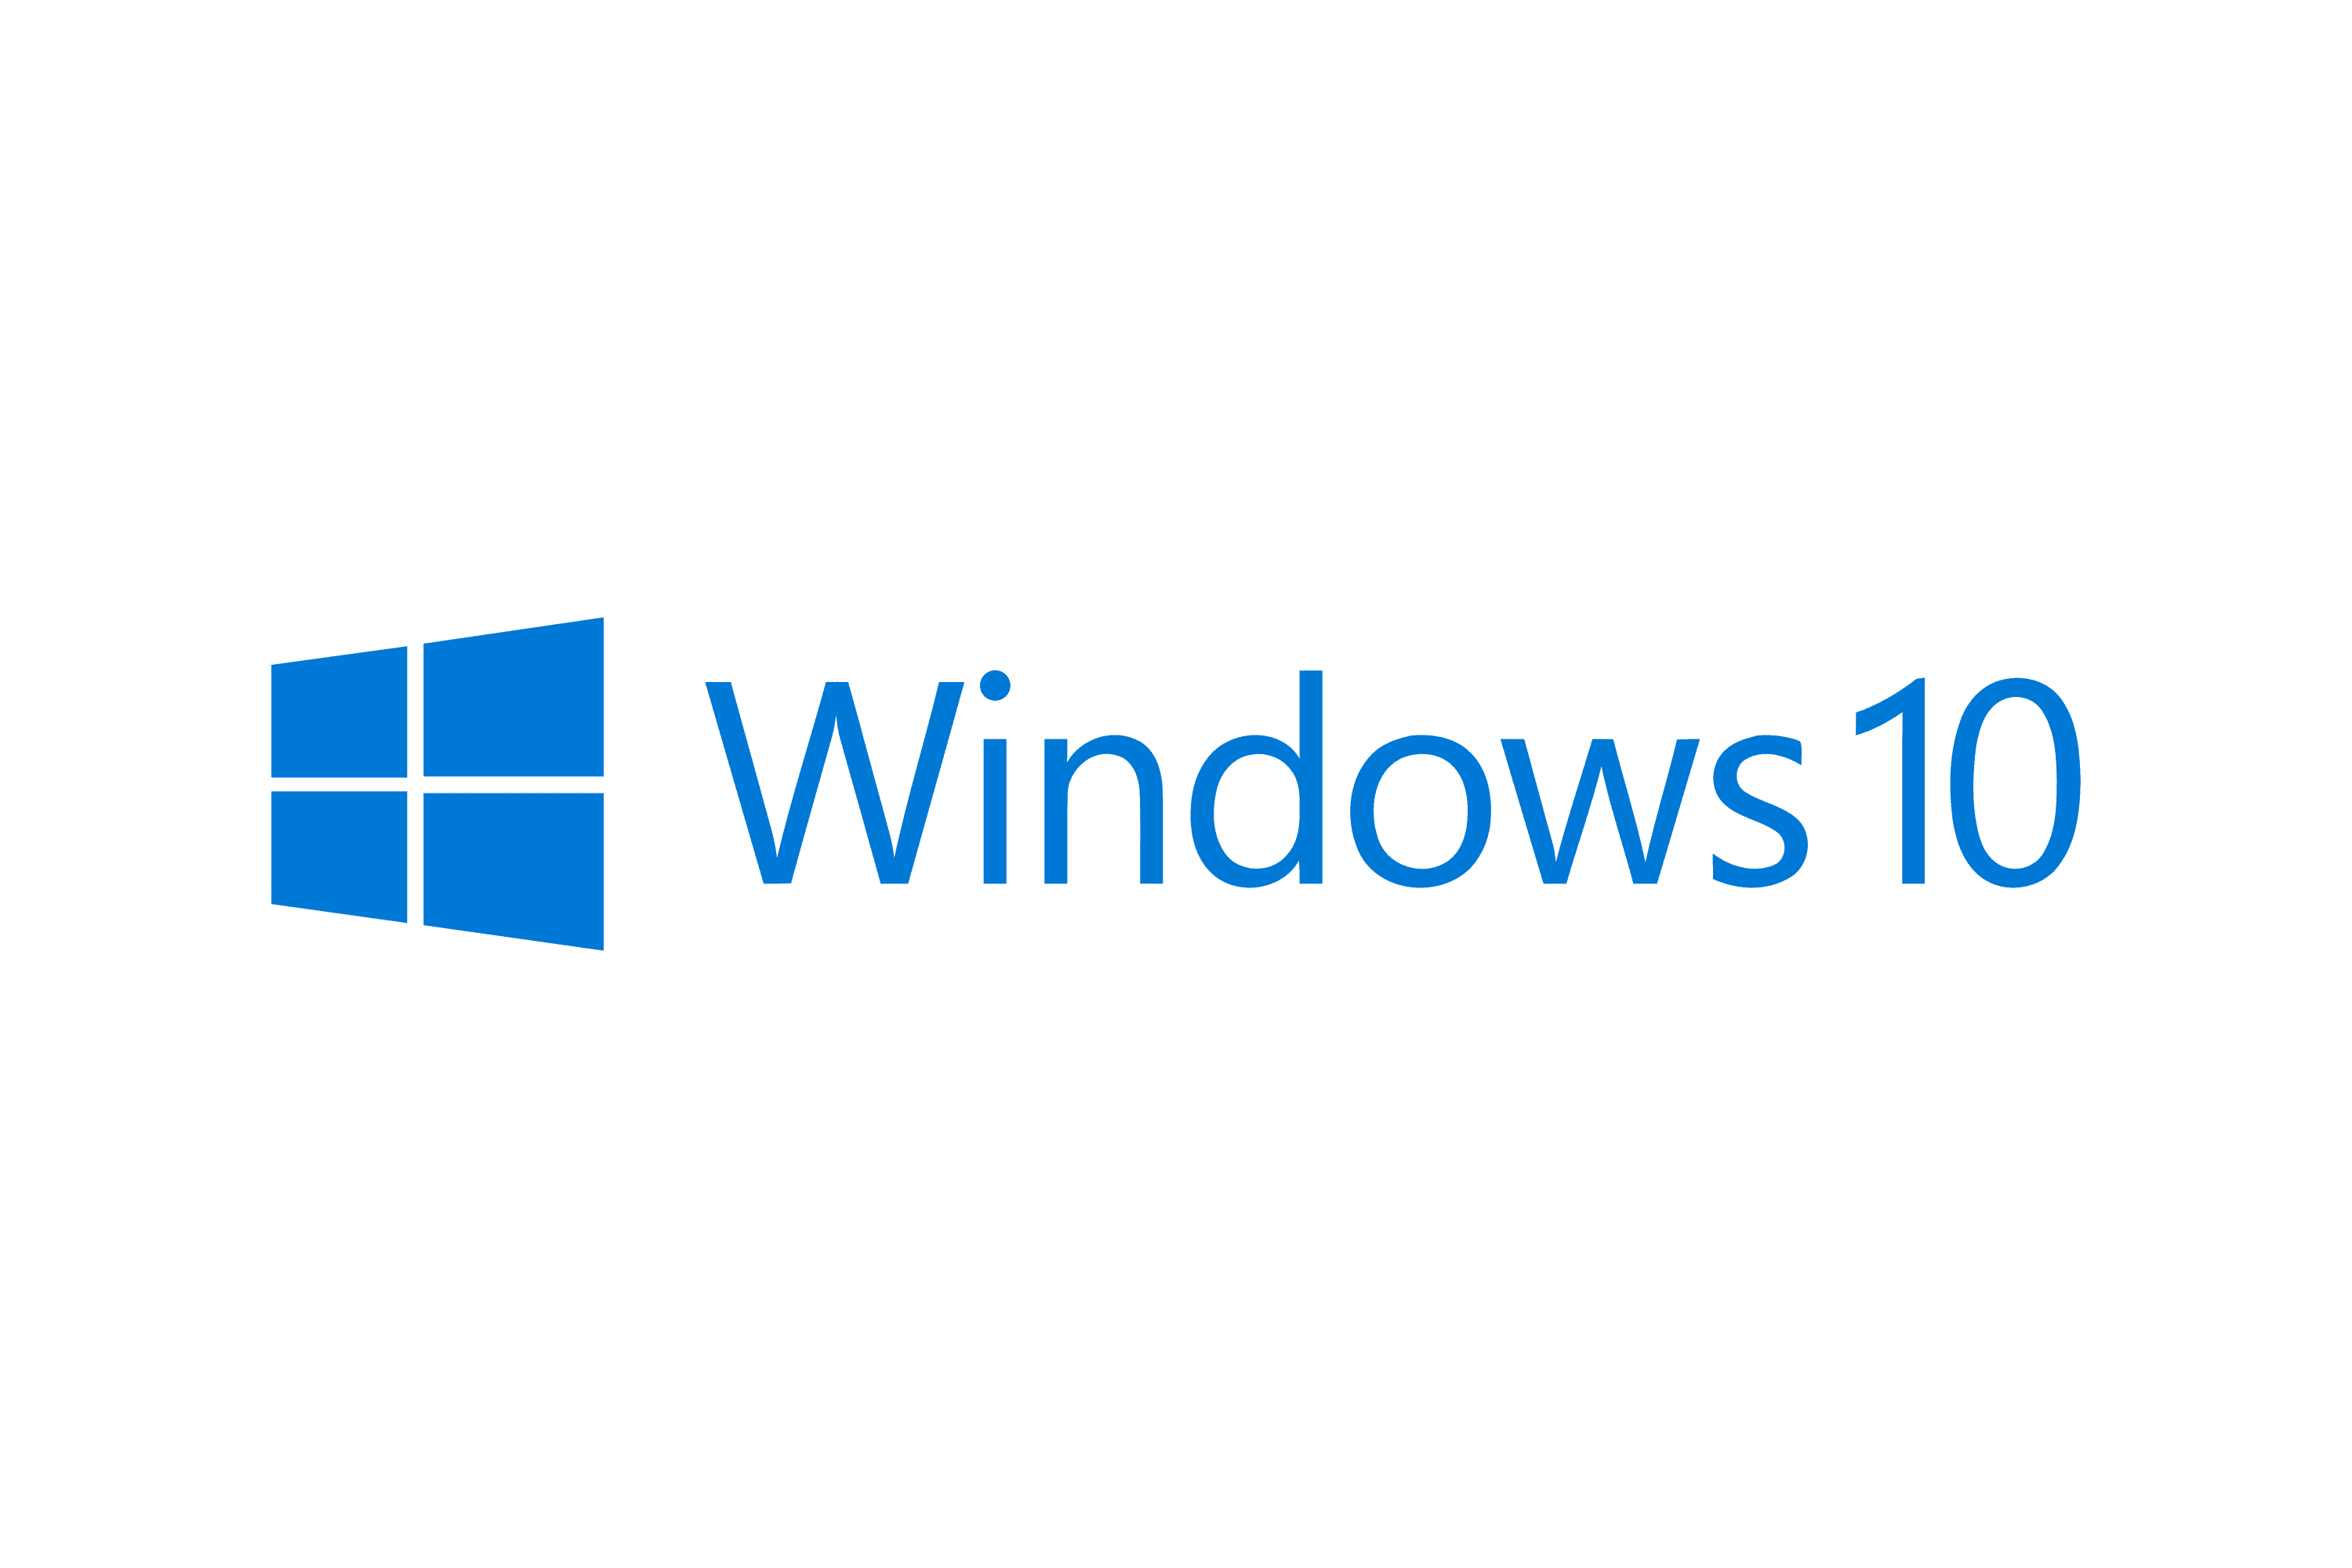 Die optionale Vorschauversion von Windows 10 KB5020030 ist jetzt verfügbar